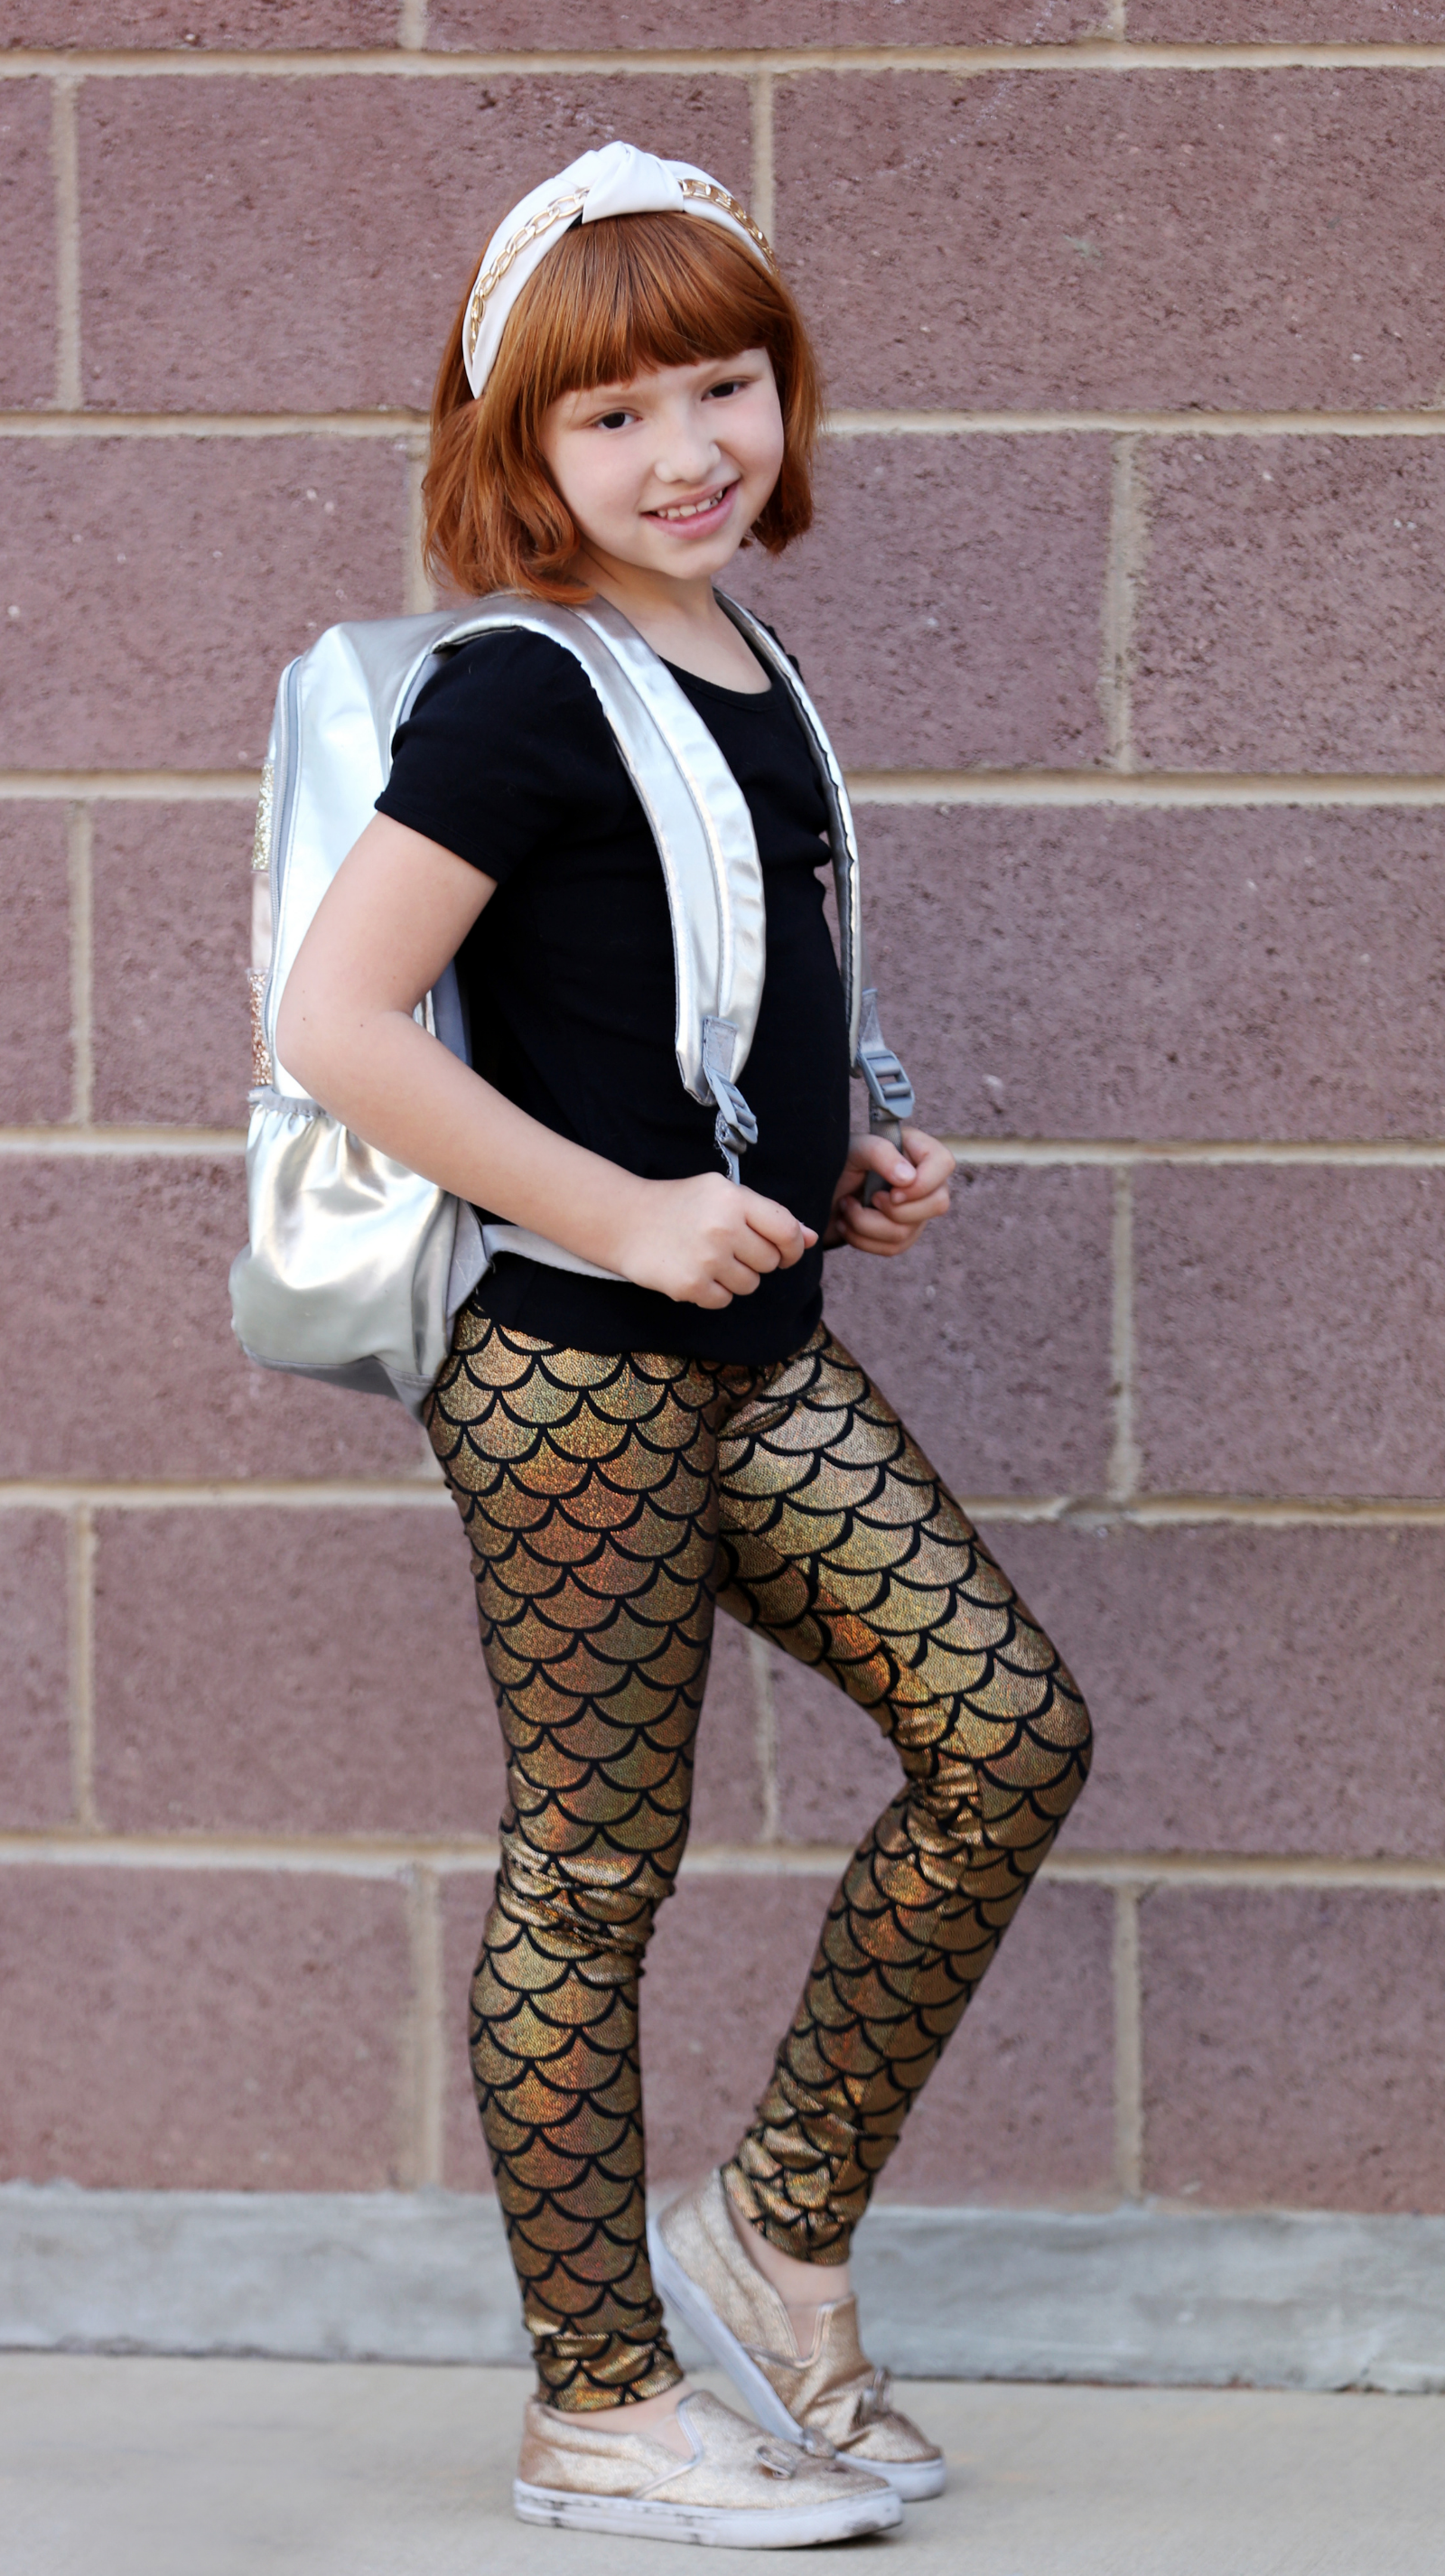  Hupplle Fashion Neon Stretch Skinny Shiny Spandex Leggings  Pants